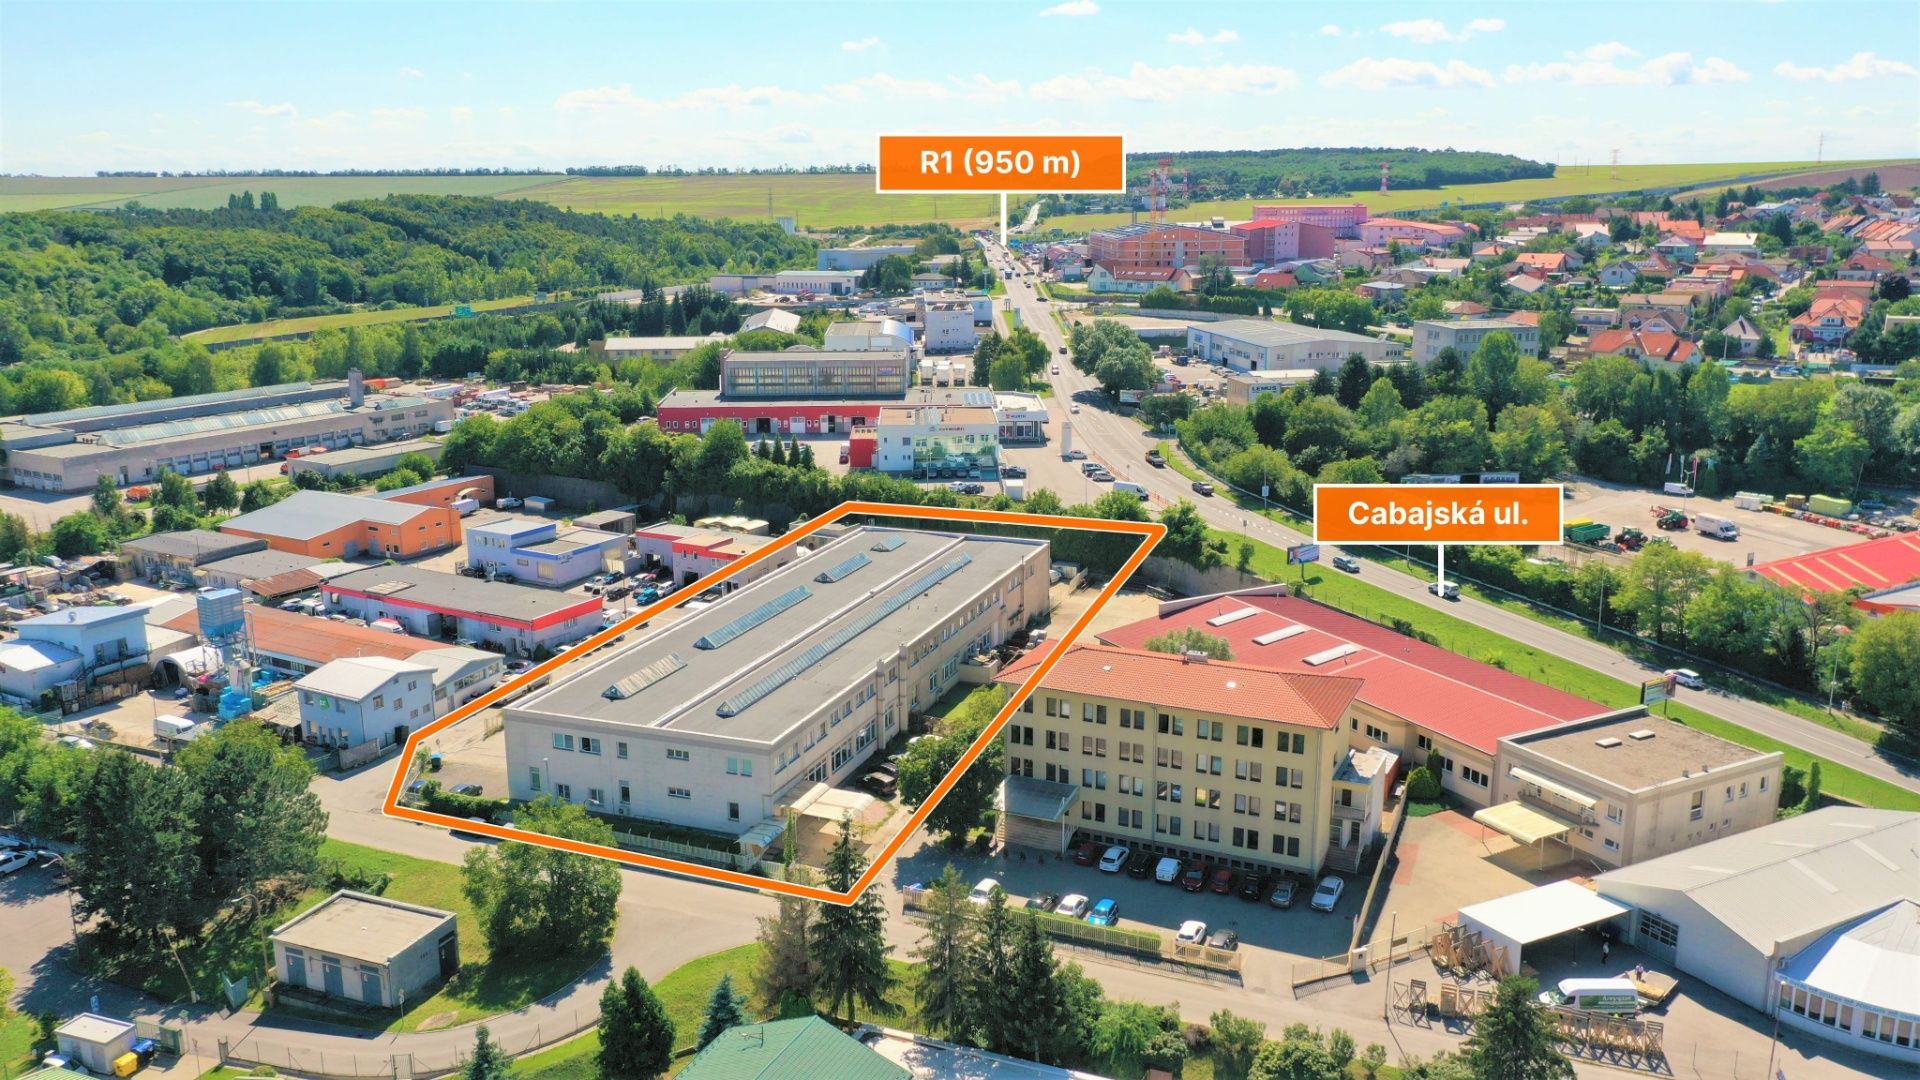 CREDA | prenájom výrobné/skladové priestory napojenie na R1, Nitra, Murgašova